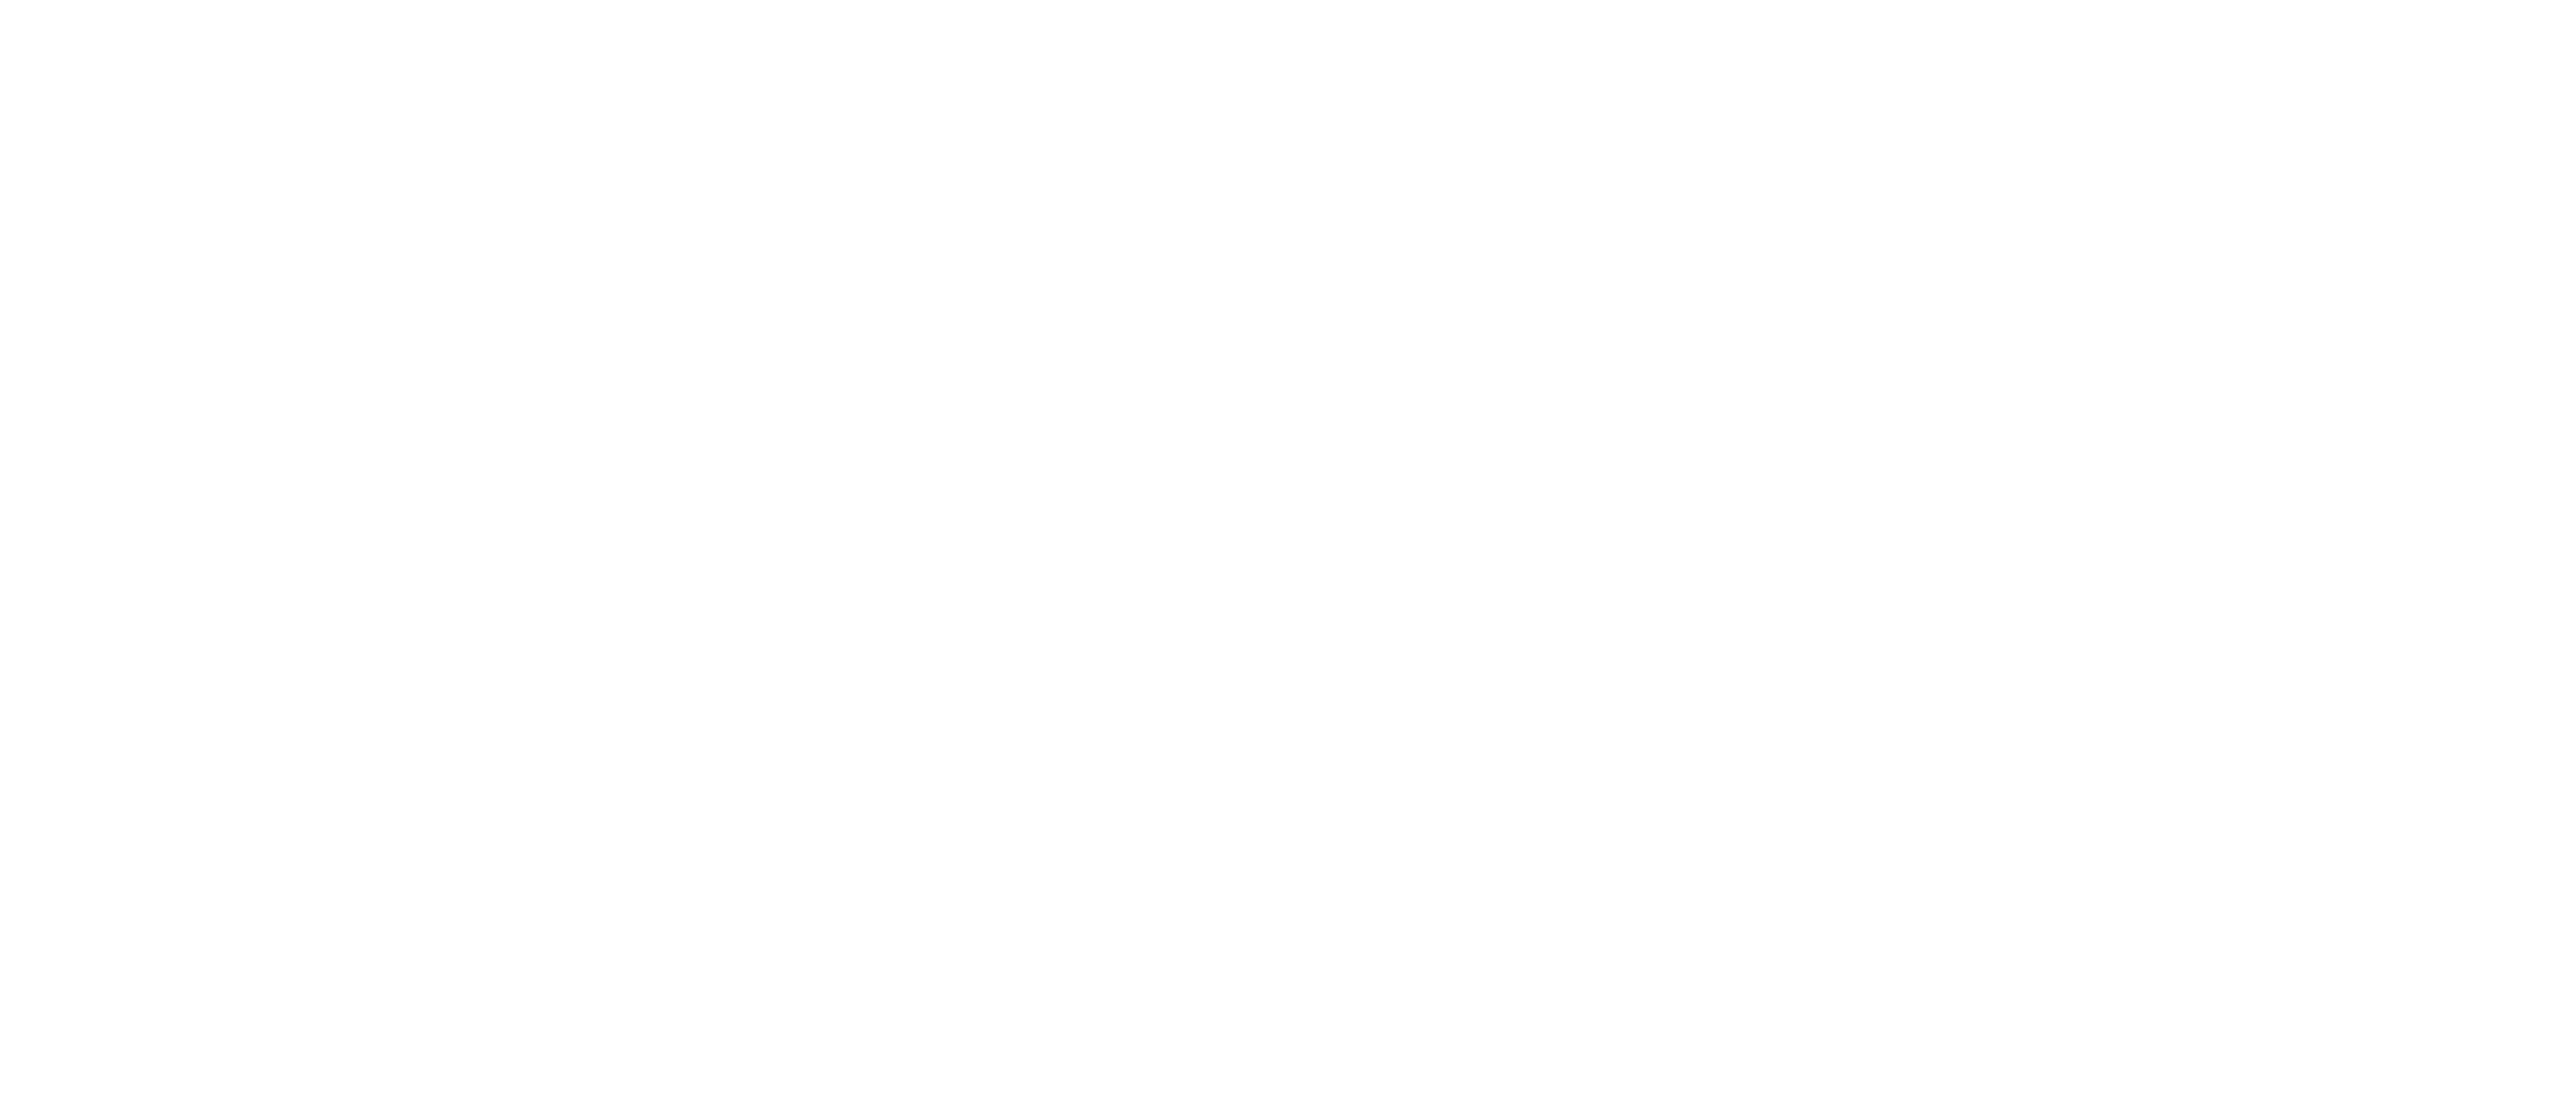 metapool-transparent_white